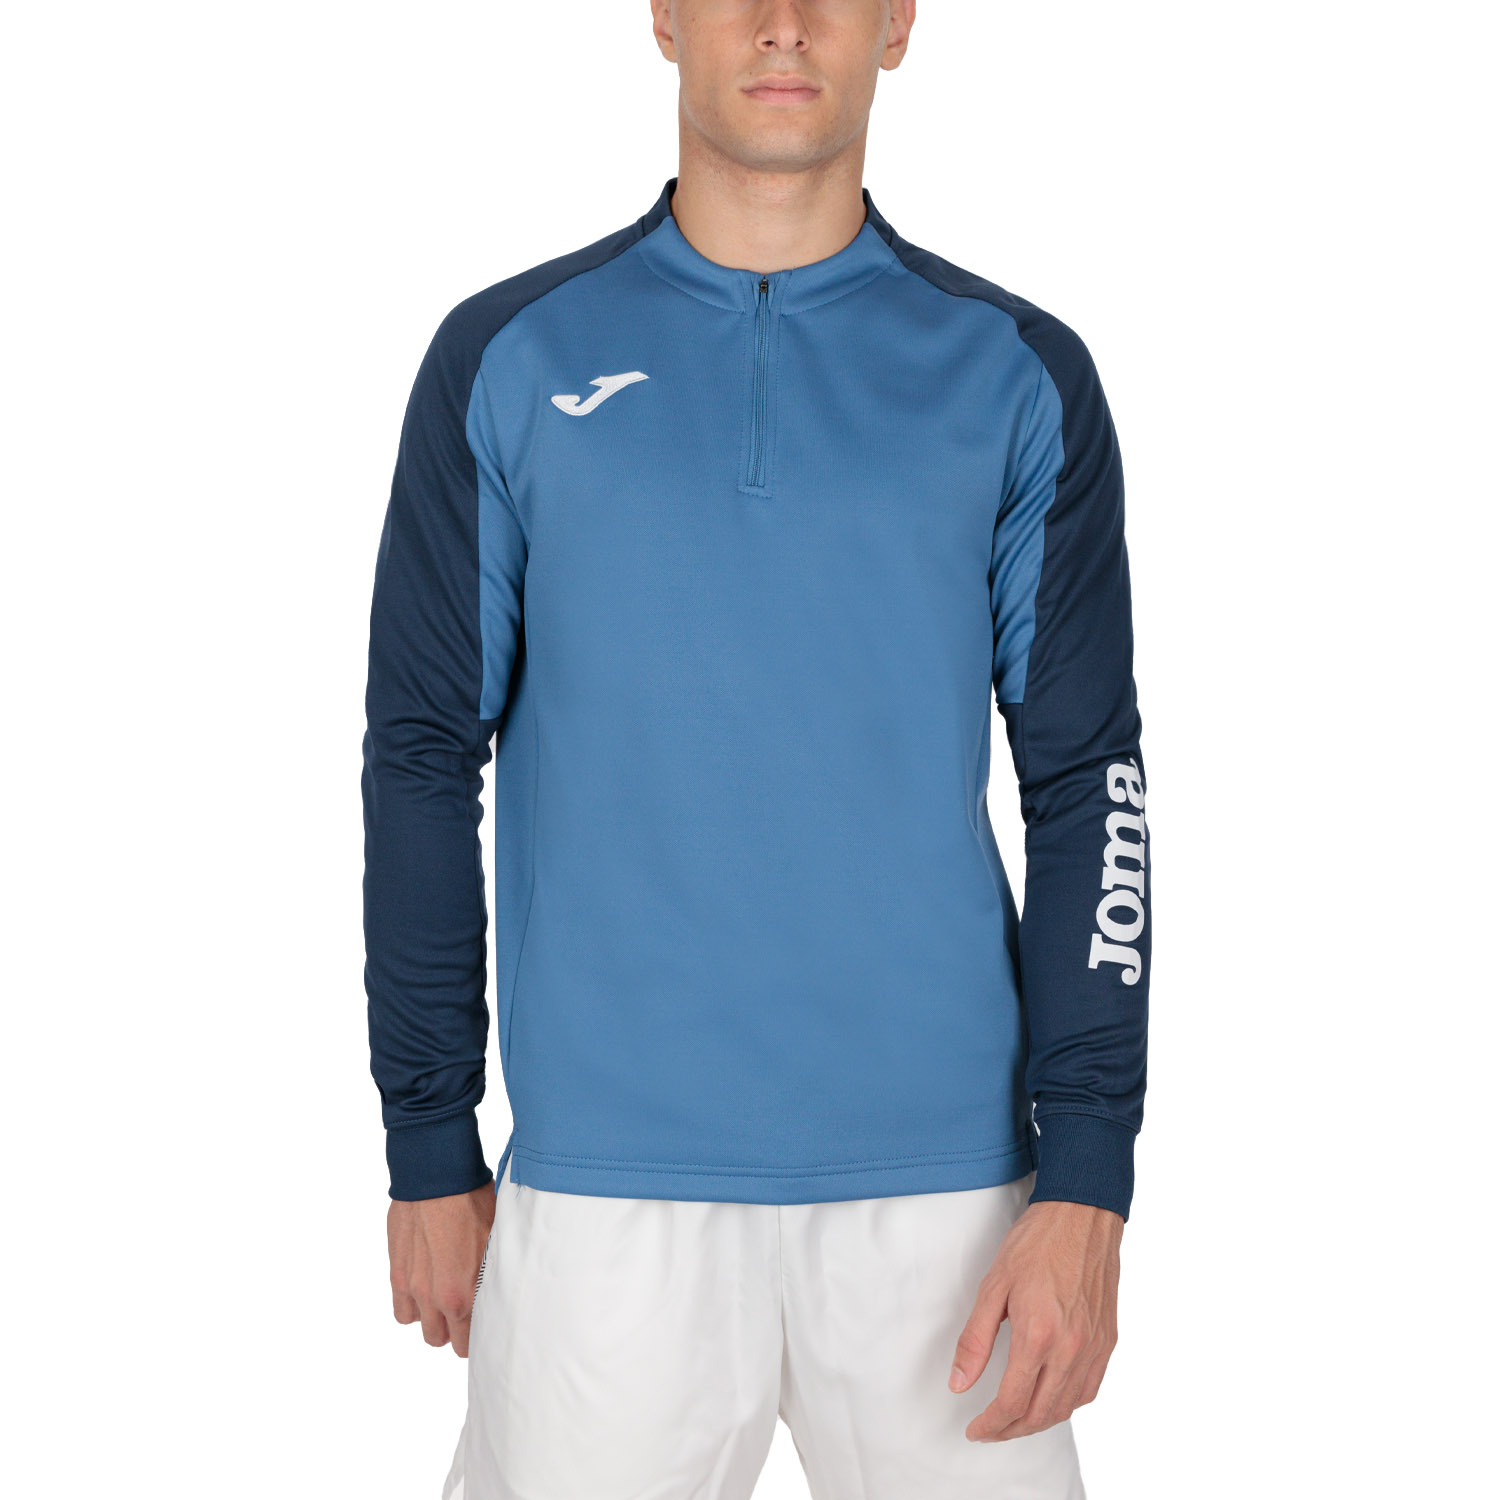 Joma Eco Championship Camisa - Blue/Navy